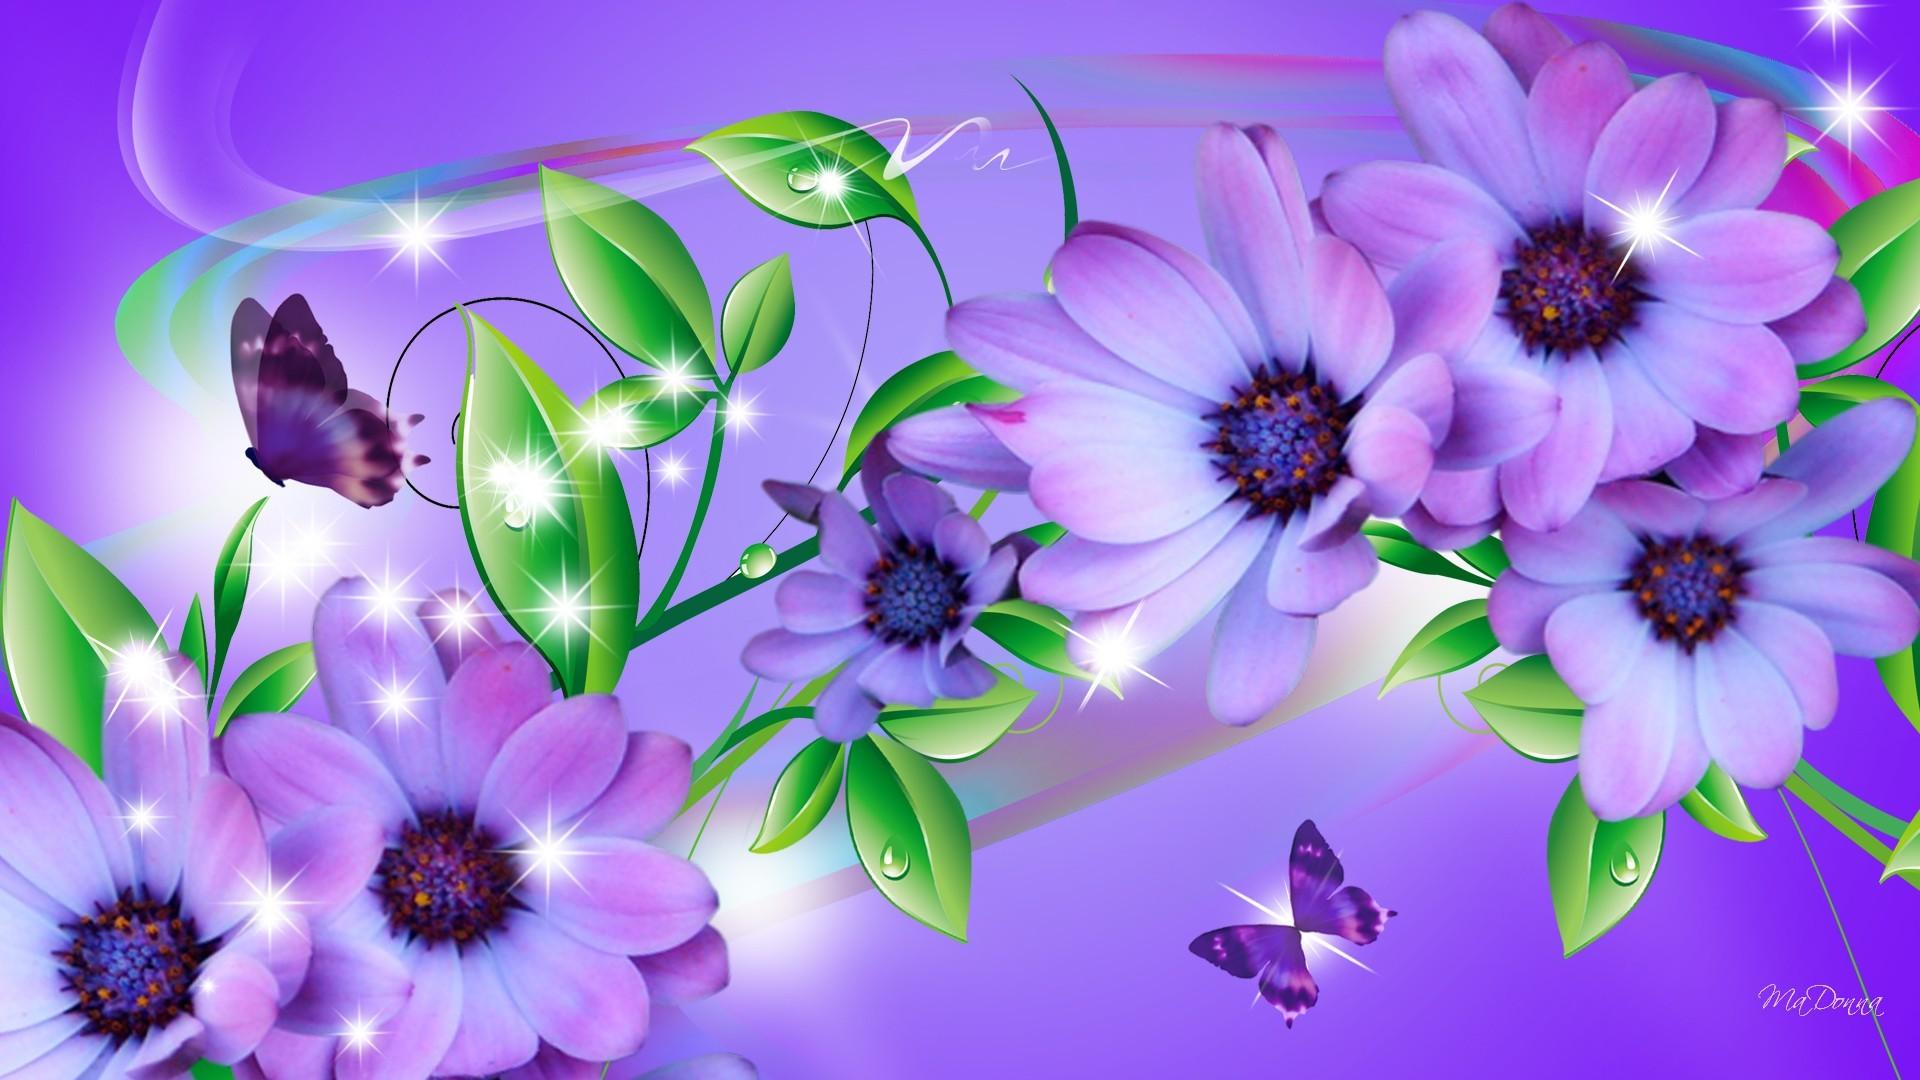 Ultra HD Wallpaper, Flower 4k Flowers